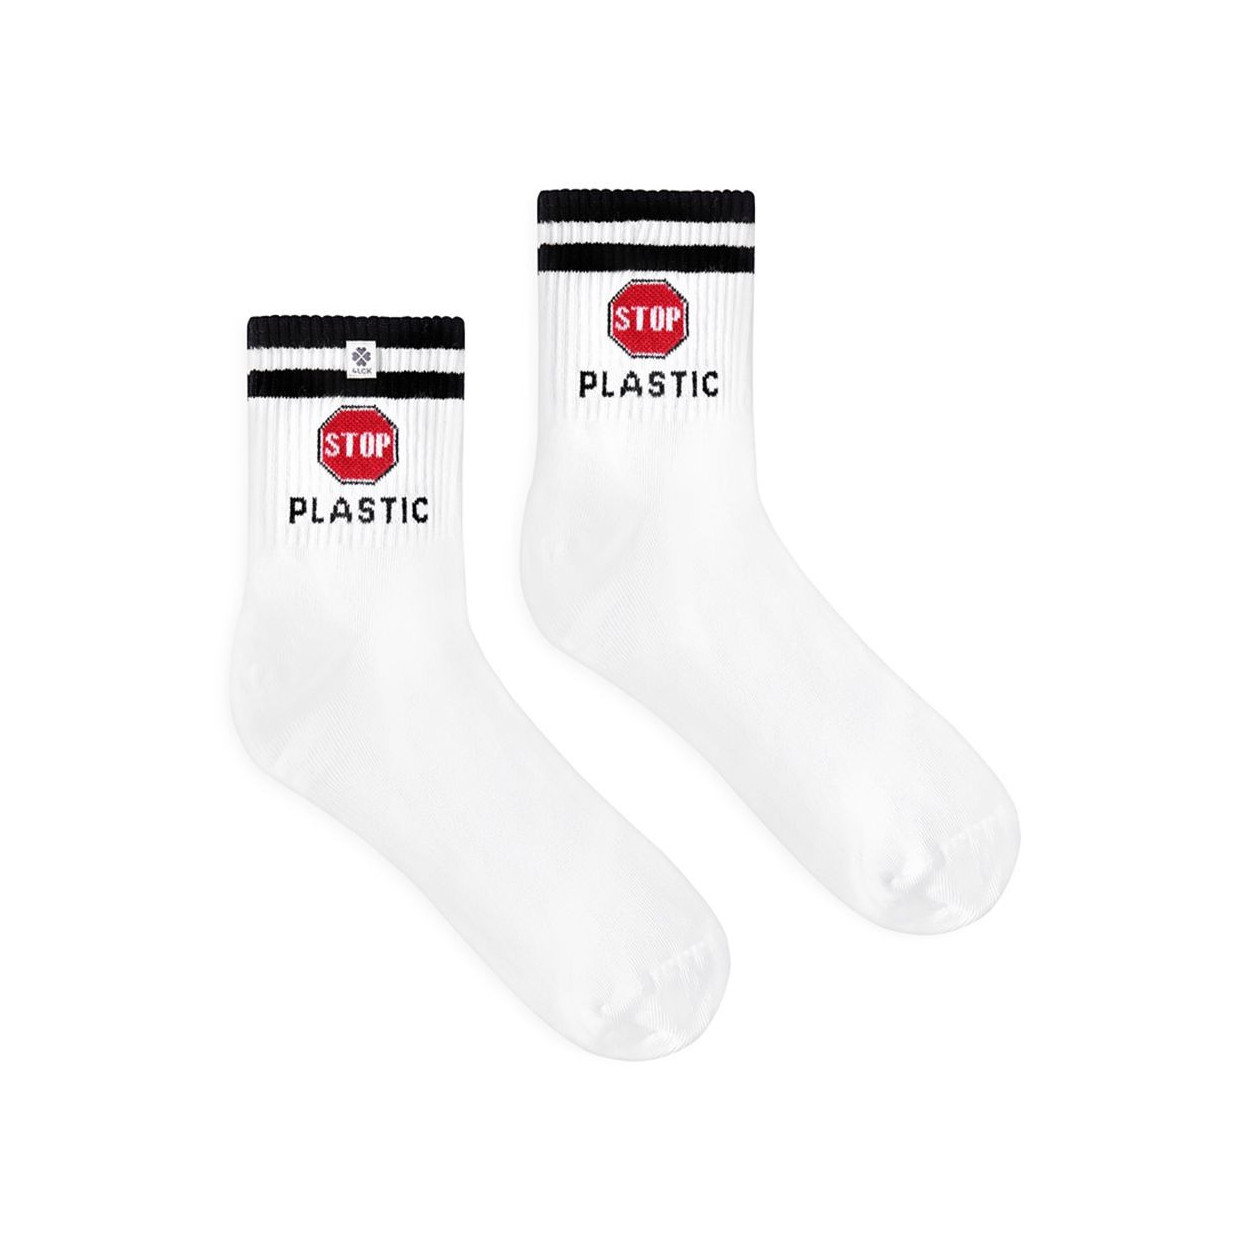 Białe skarpetki z symbolem stop i napisem plastic - wyraź swoje ekologiczne zaangażowanie